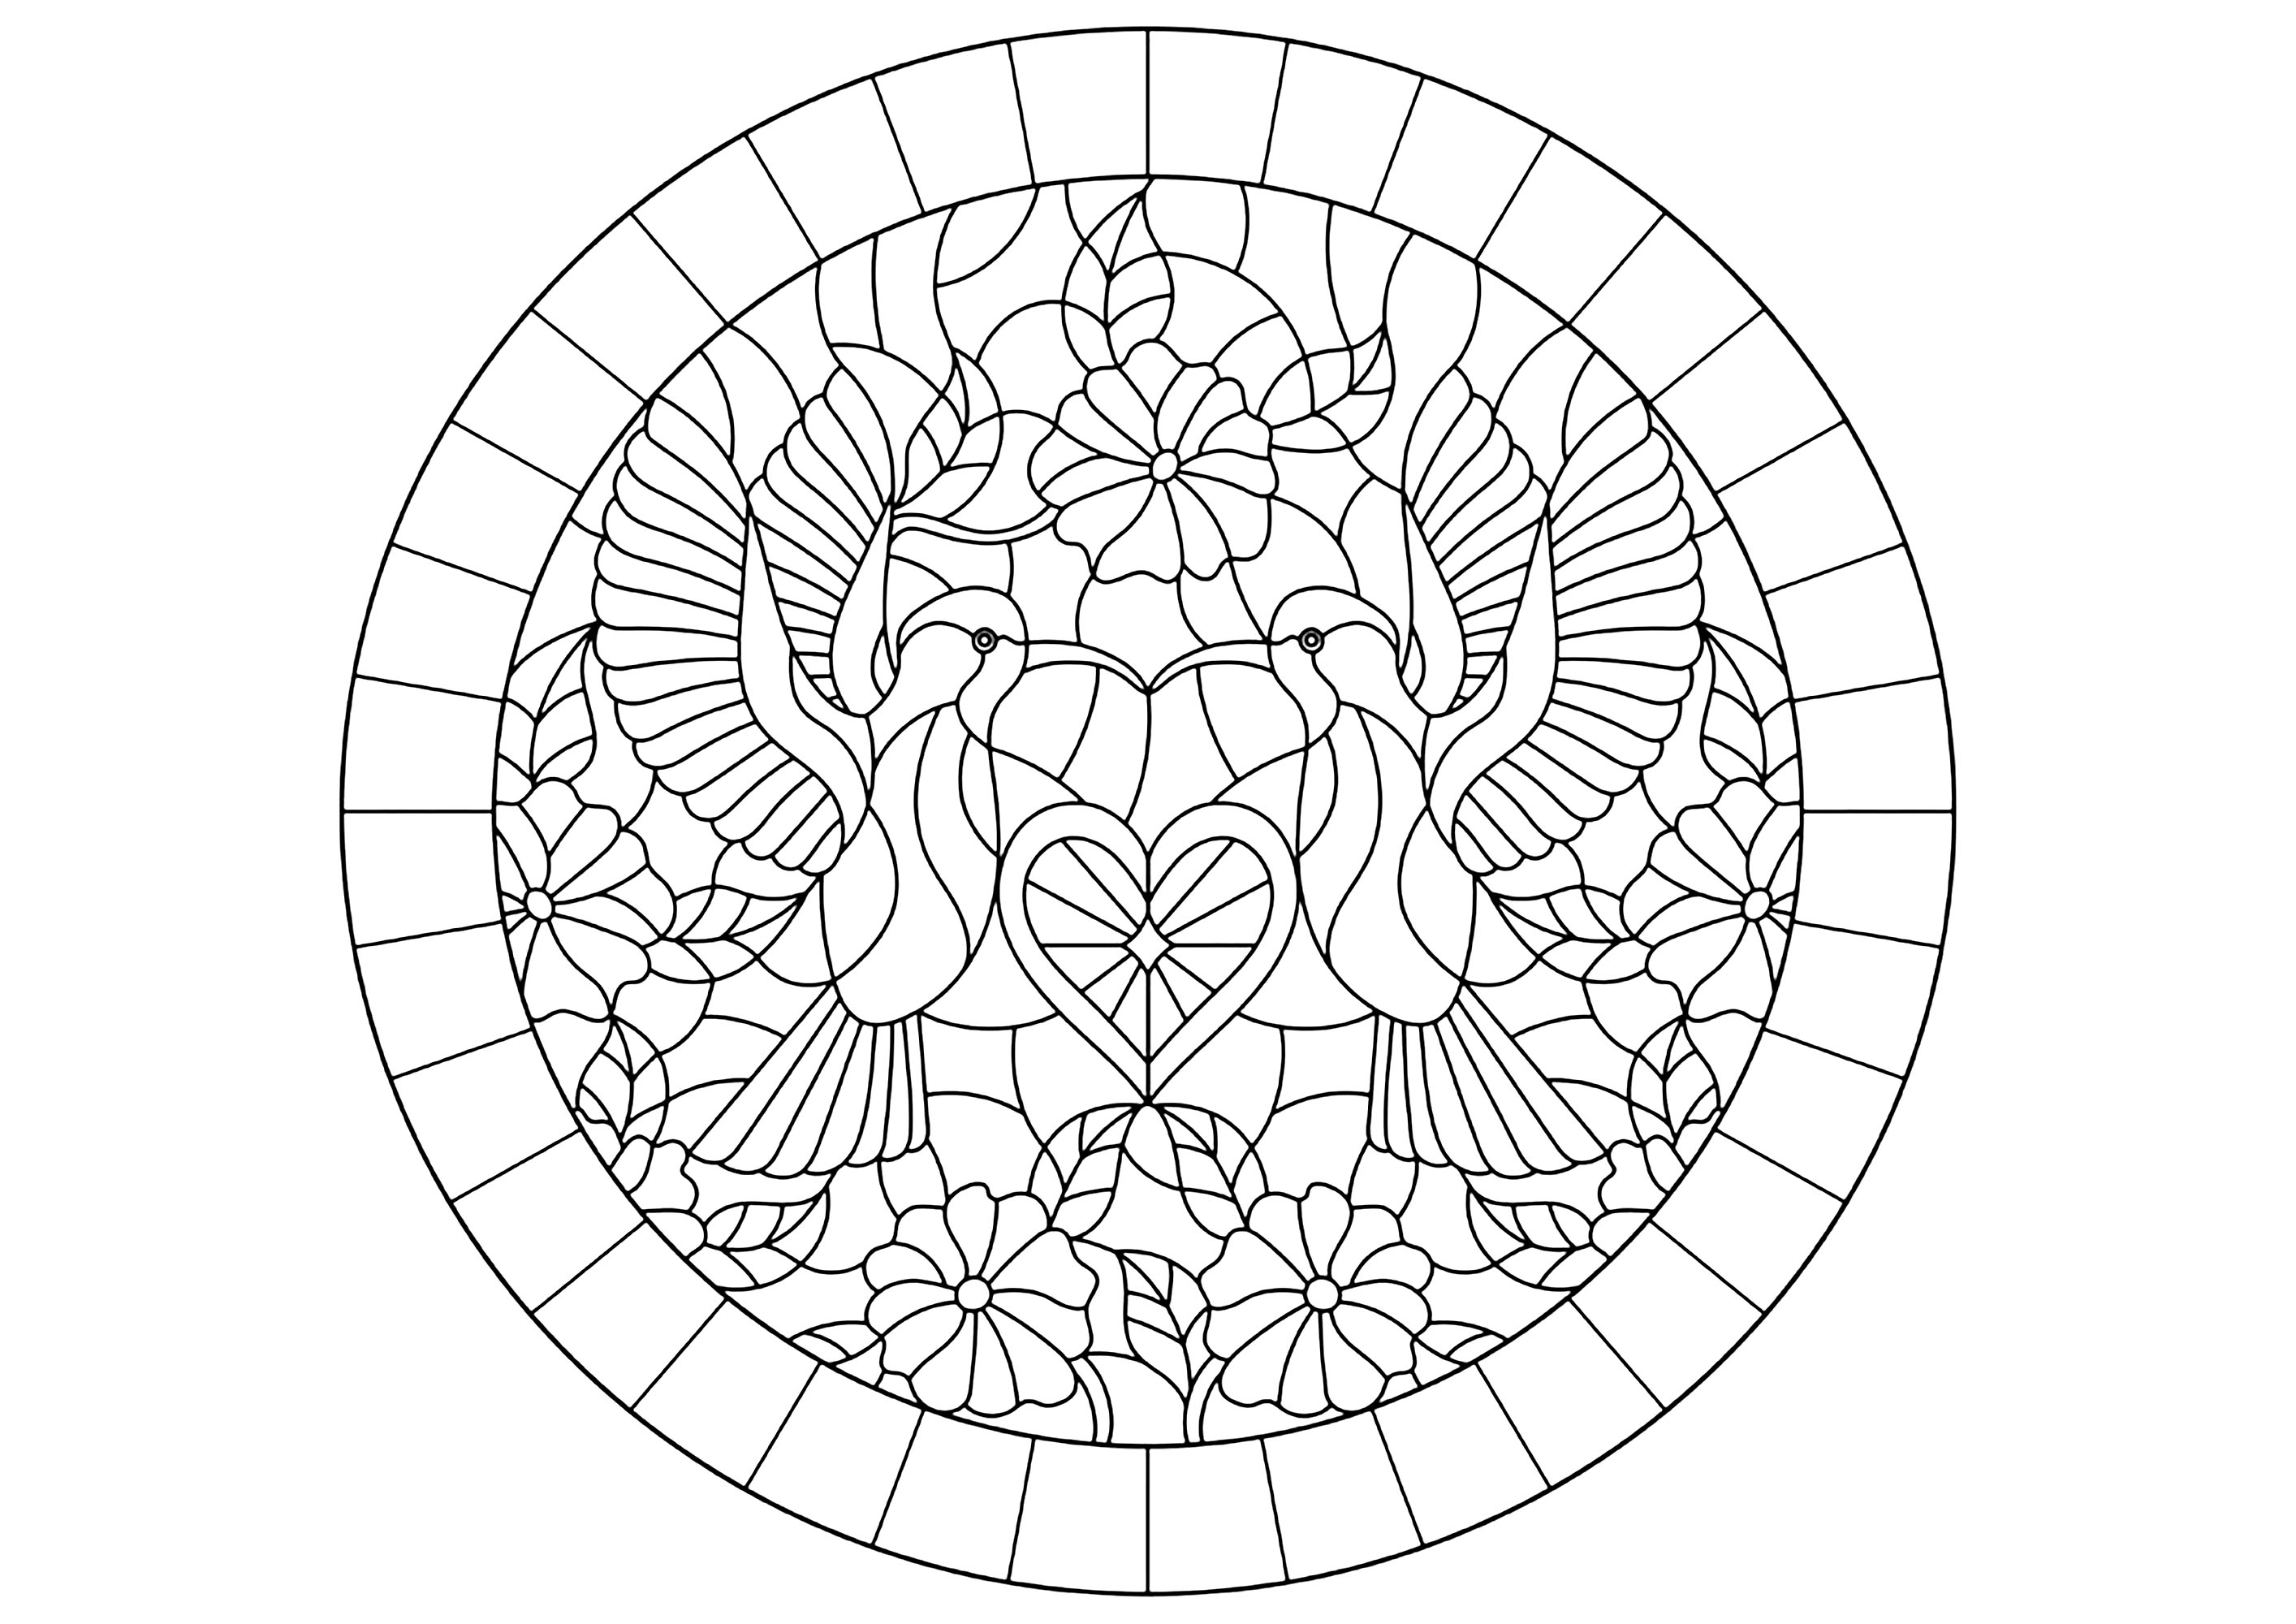 Deux oiseaux dans un cercle, style vitrail. L'amour représenté dans un coloriage unique, Source : 123rf   Artiste : zagory